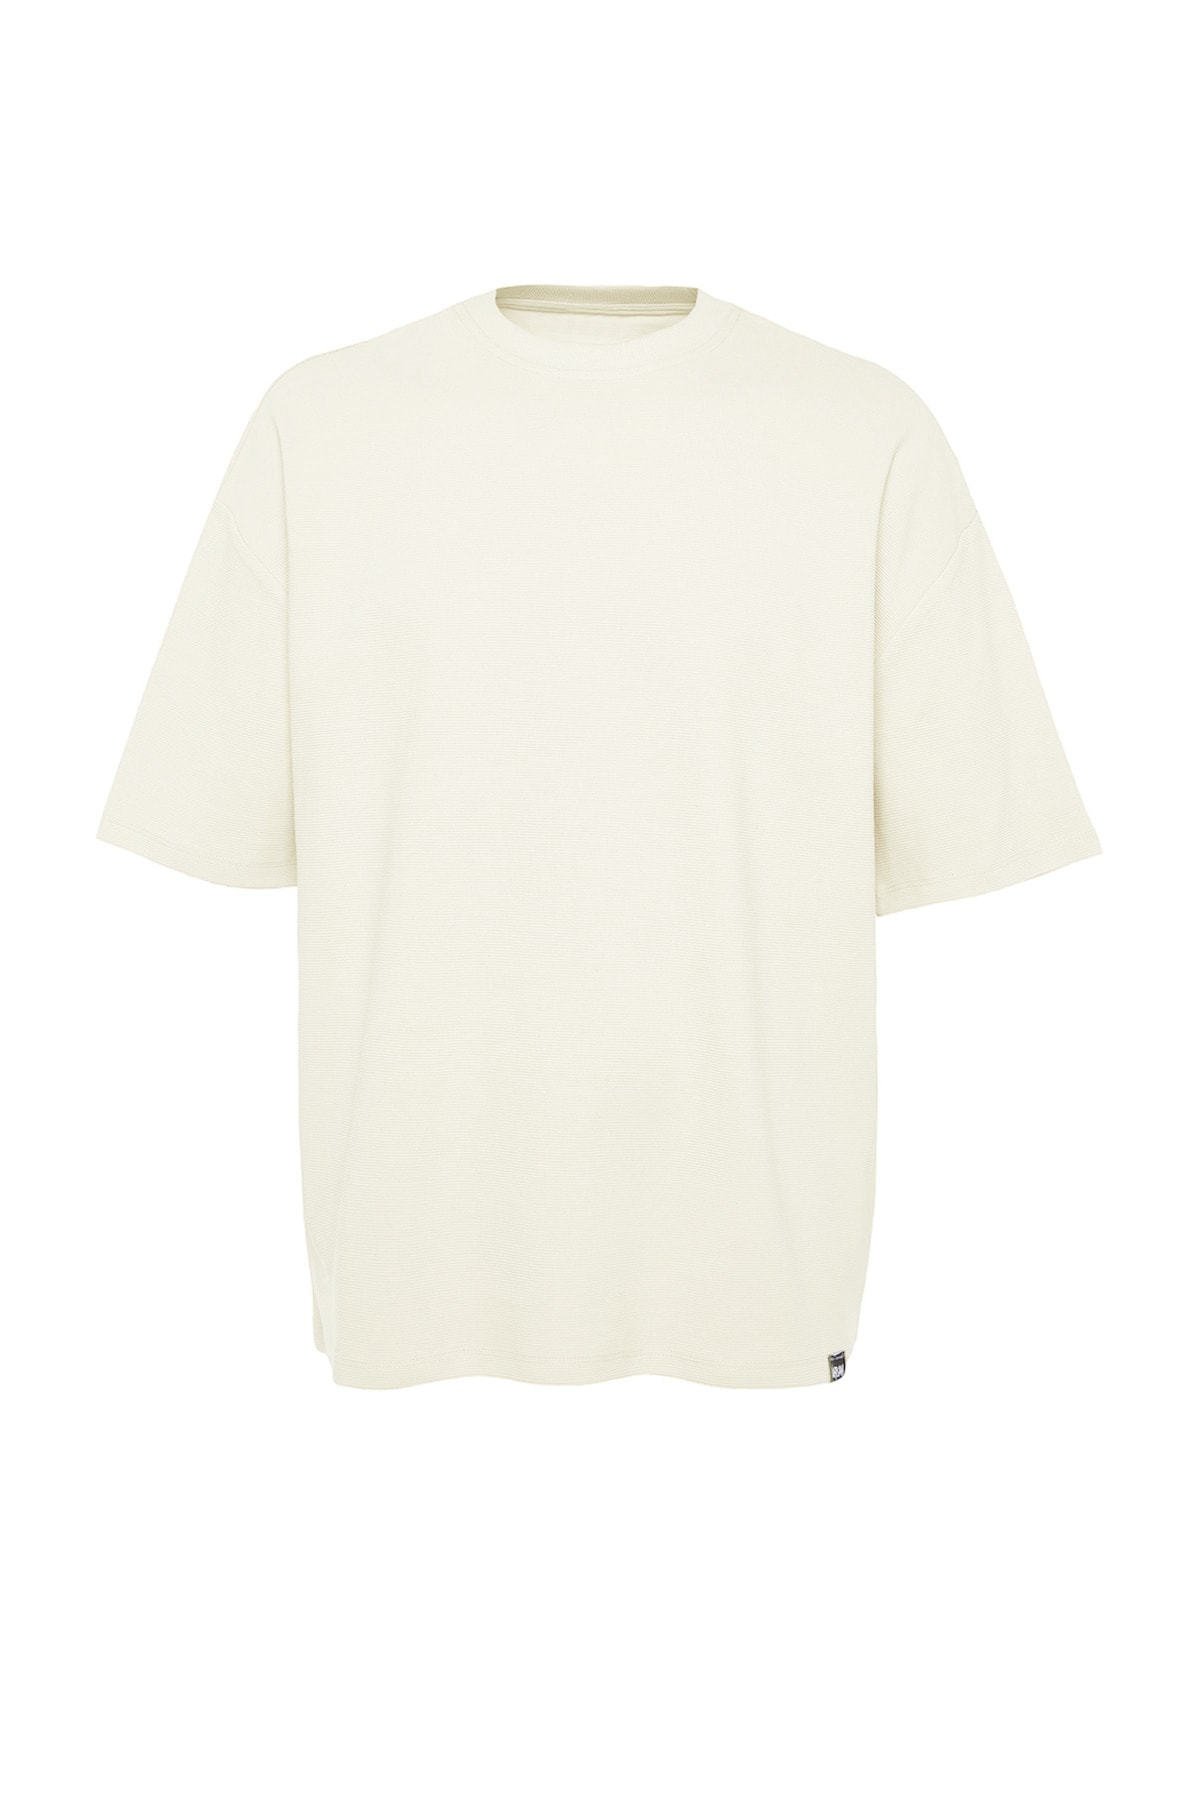 Trendyol Collection Ecrufarbenes Herren-T-Shirt in Struktur aus 100 limitierter - Übergröße/Weitschnitt Premium-Baumwolle % Trendyol Auflage in mit